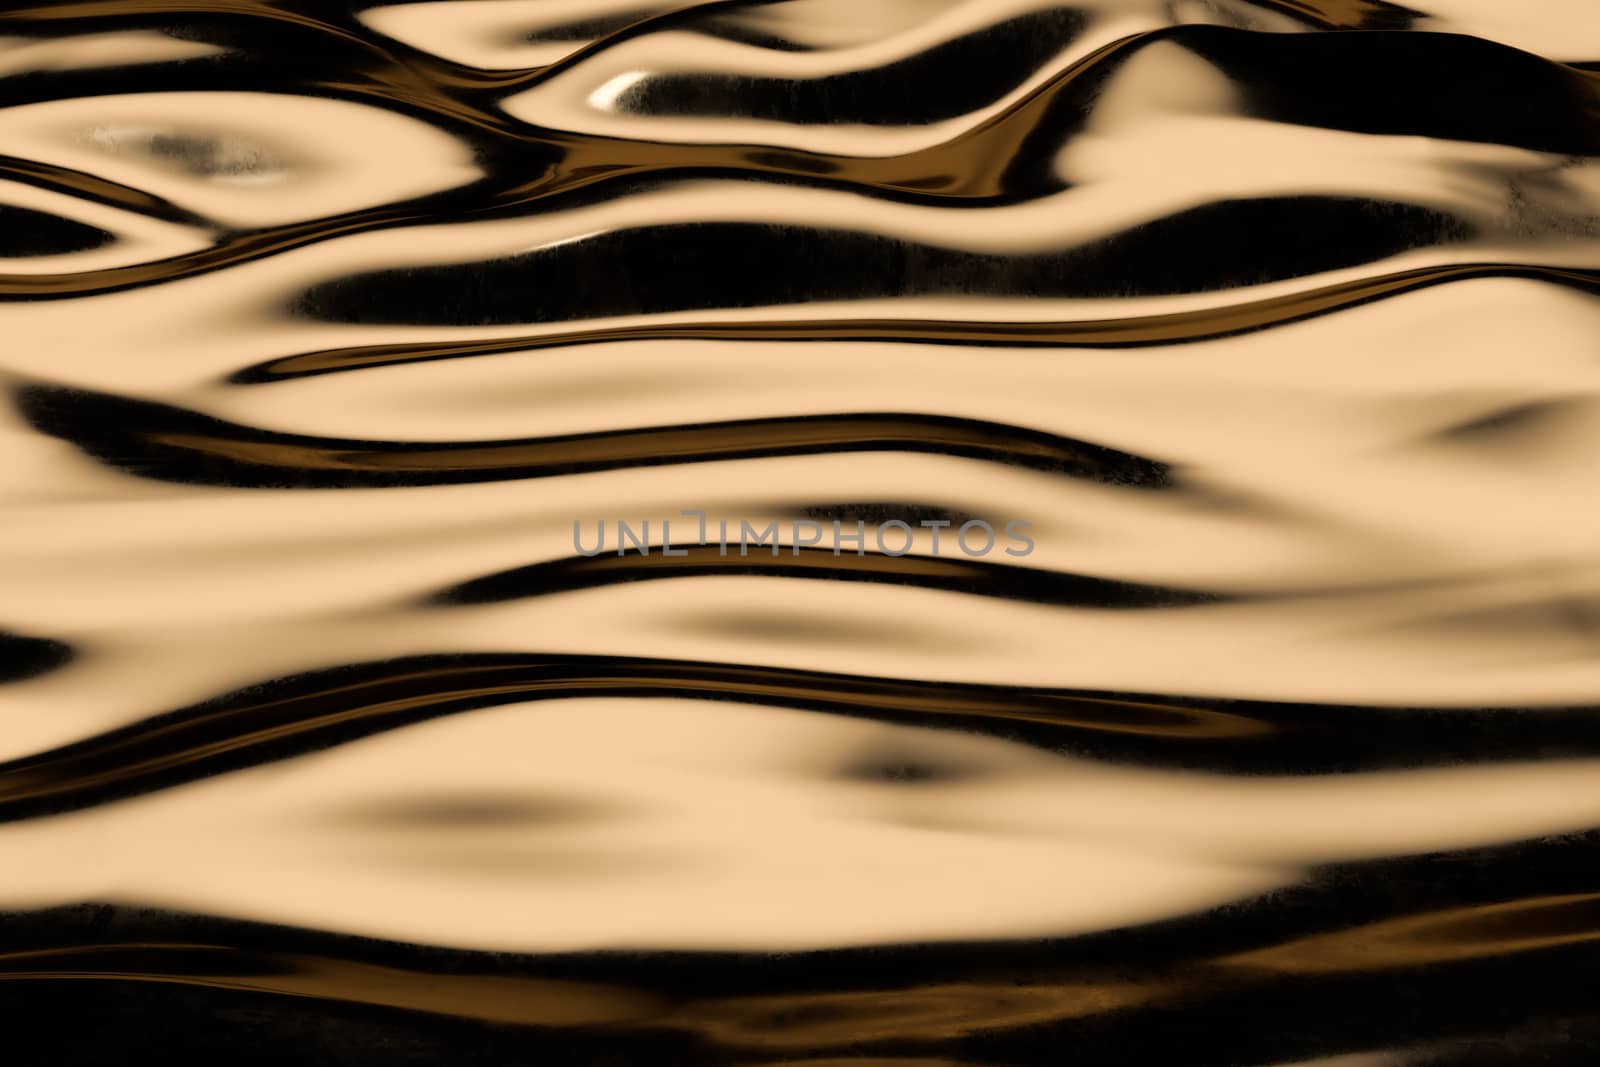 Flowing ripple pattern, golden background, 3d rendering. by vinkfan